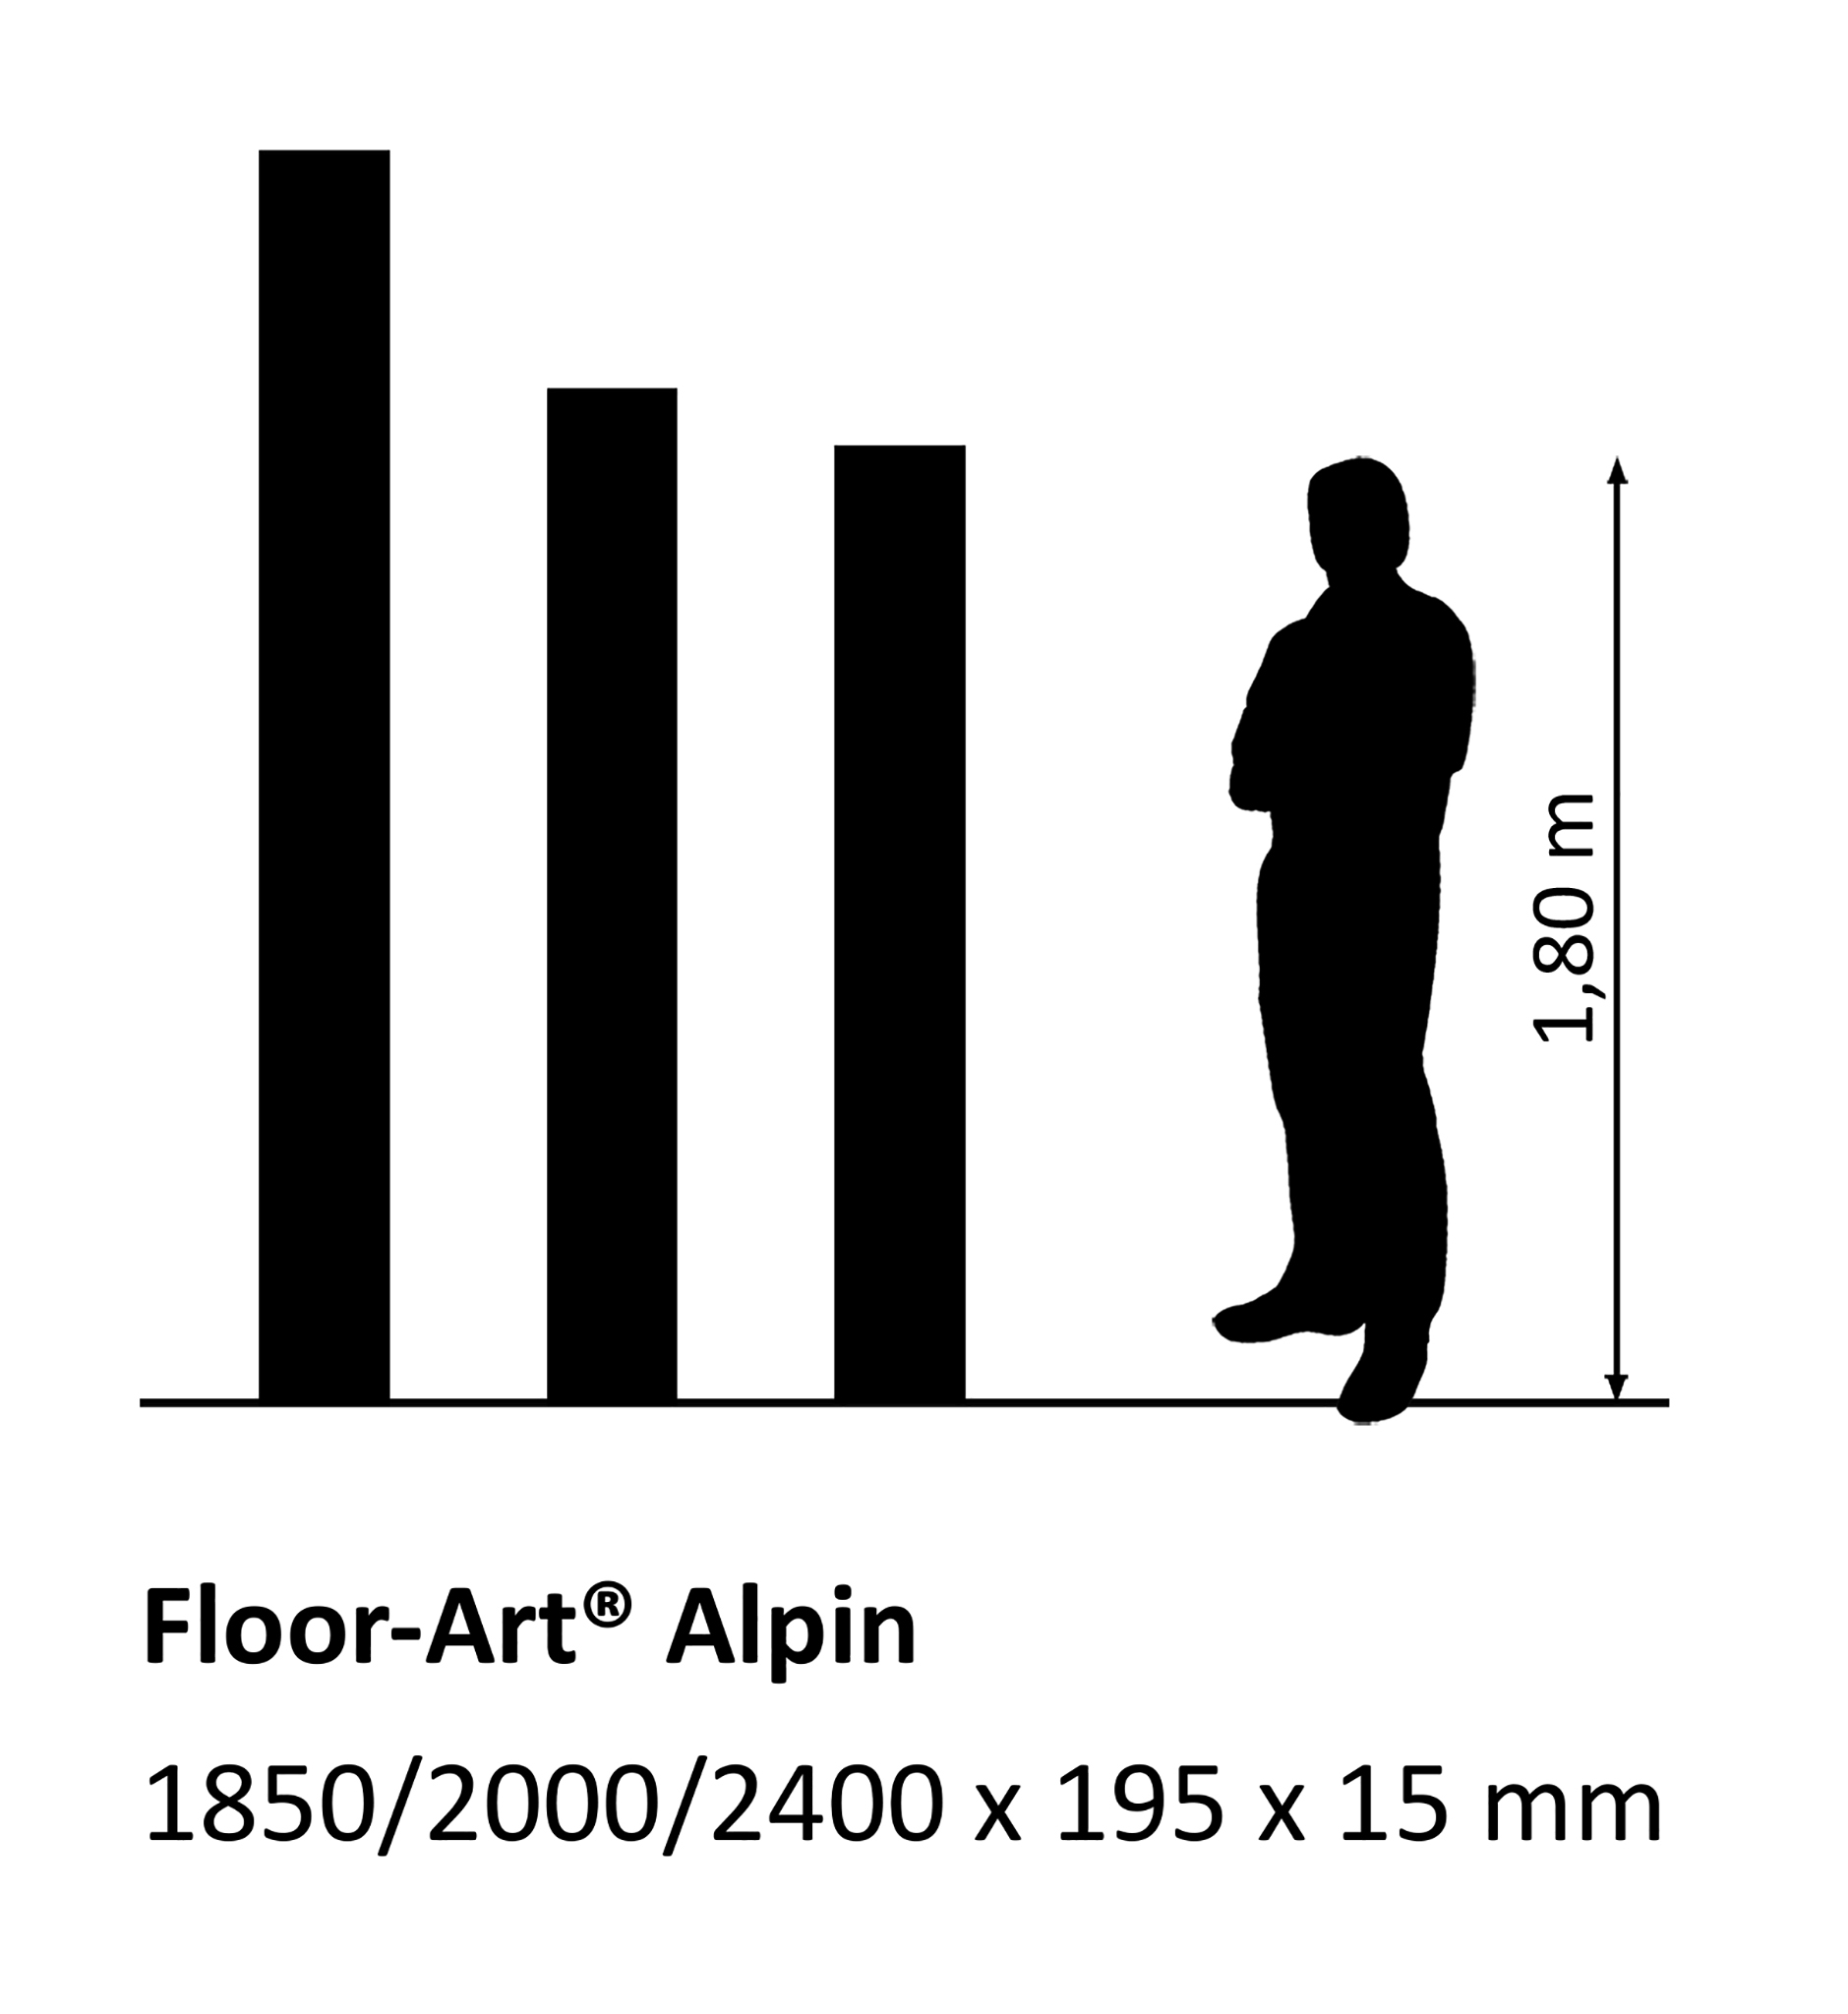 Floor-Art Alpin Lärche alt Basic geölt